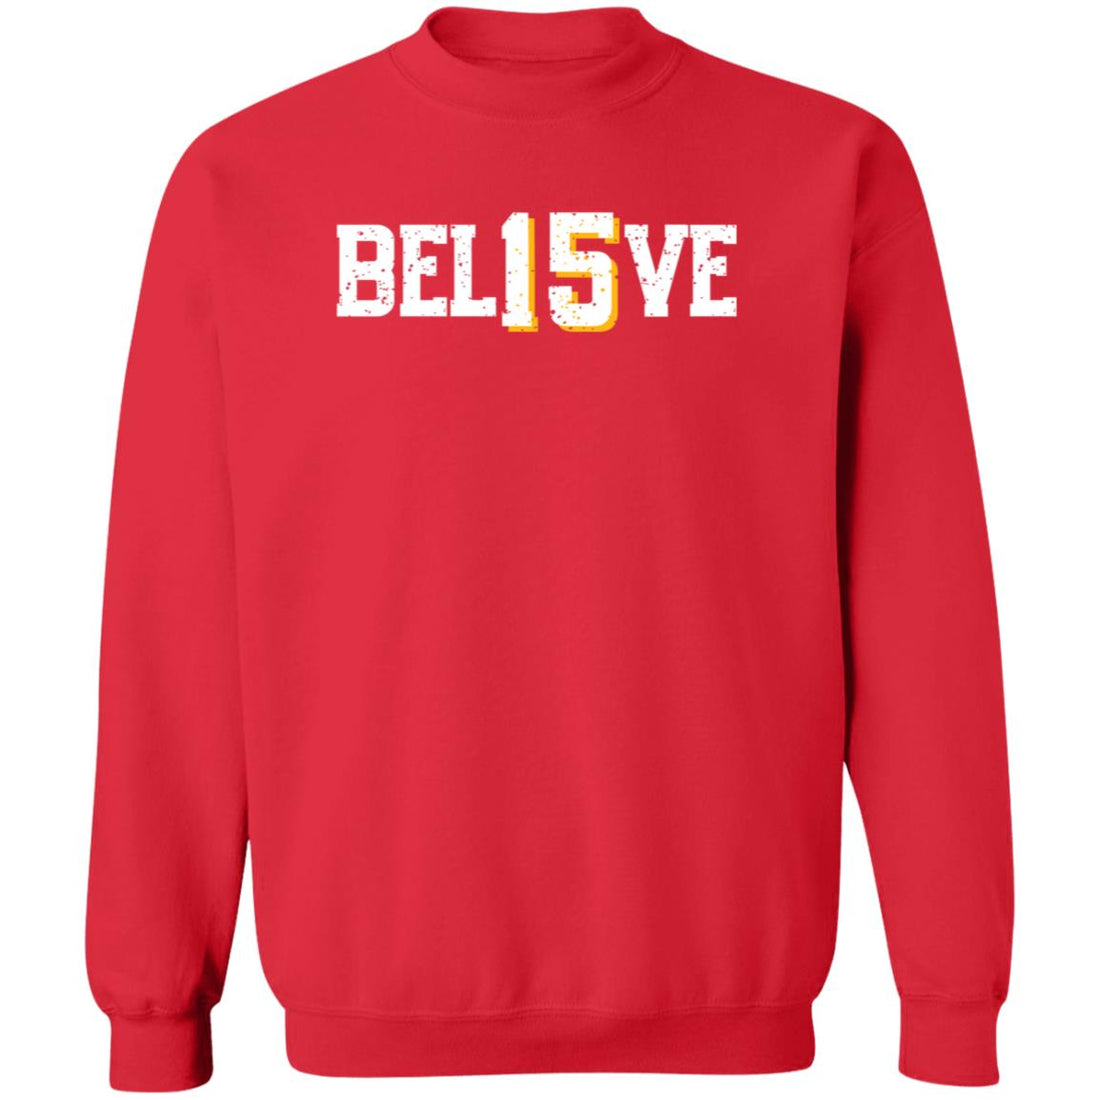 Bel15ve Pullover Sweatshirt - Sweatshirts - Positively Sassy - Bel15ve Pullover Sweatshirt